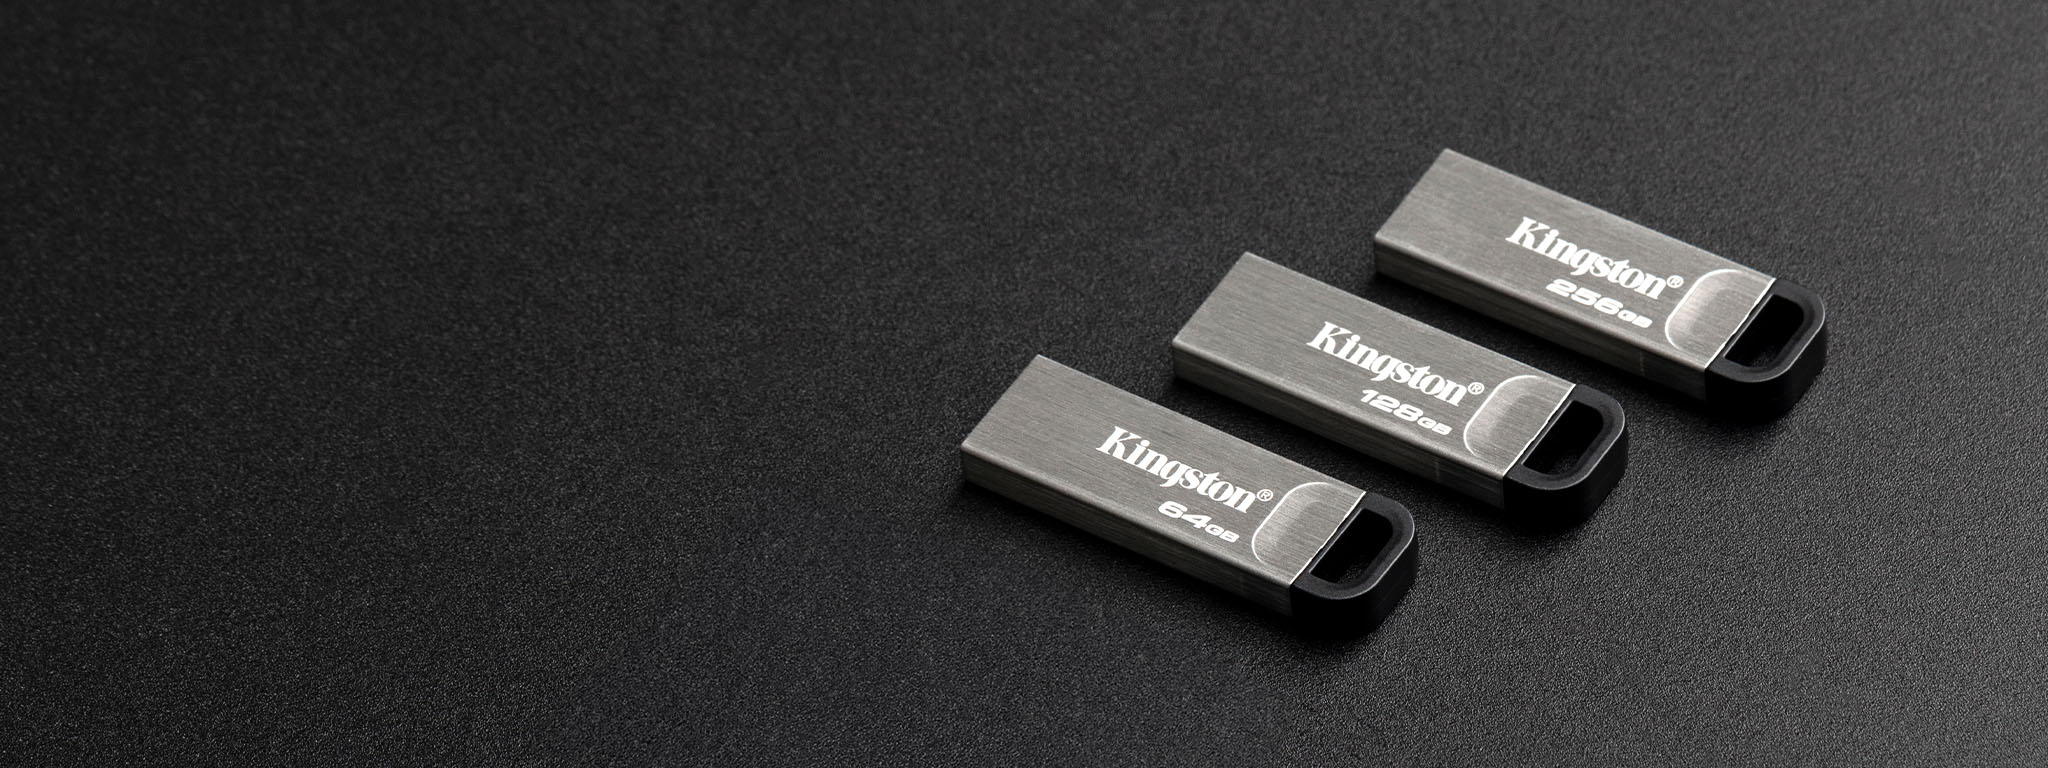 Draufsicht auf vier verschiedene Kapazitäten von DT Kyson USB-Sticks auf einer schwarzen Oberfläche